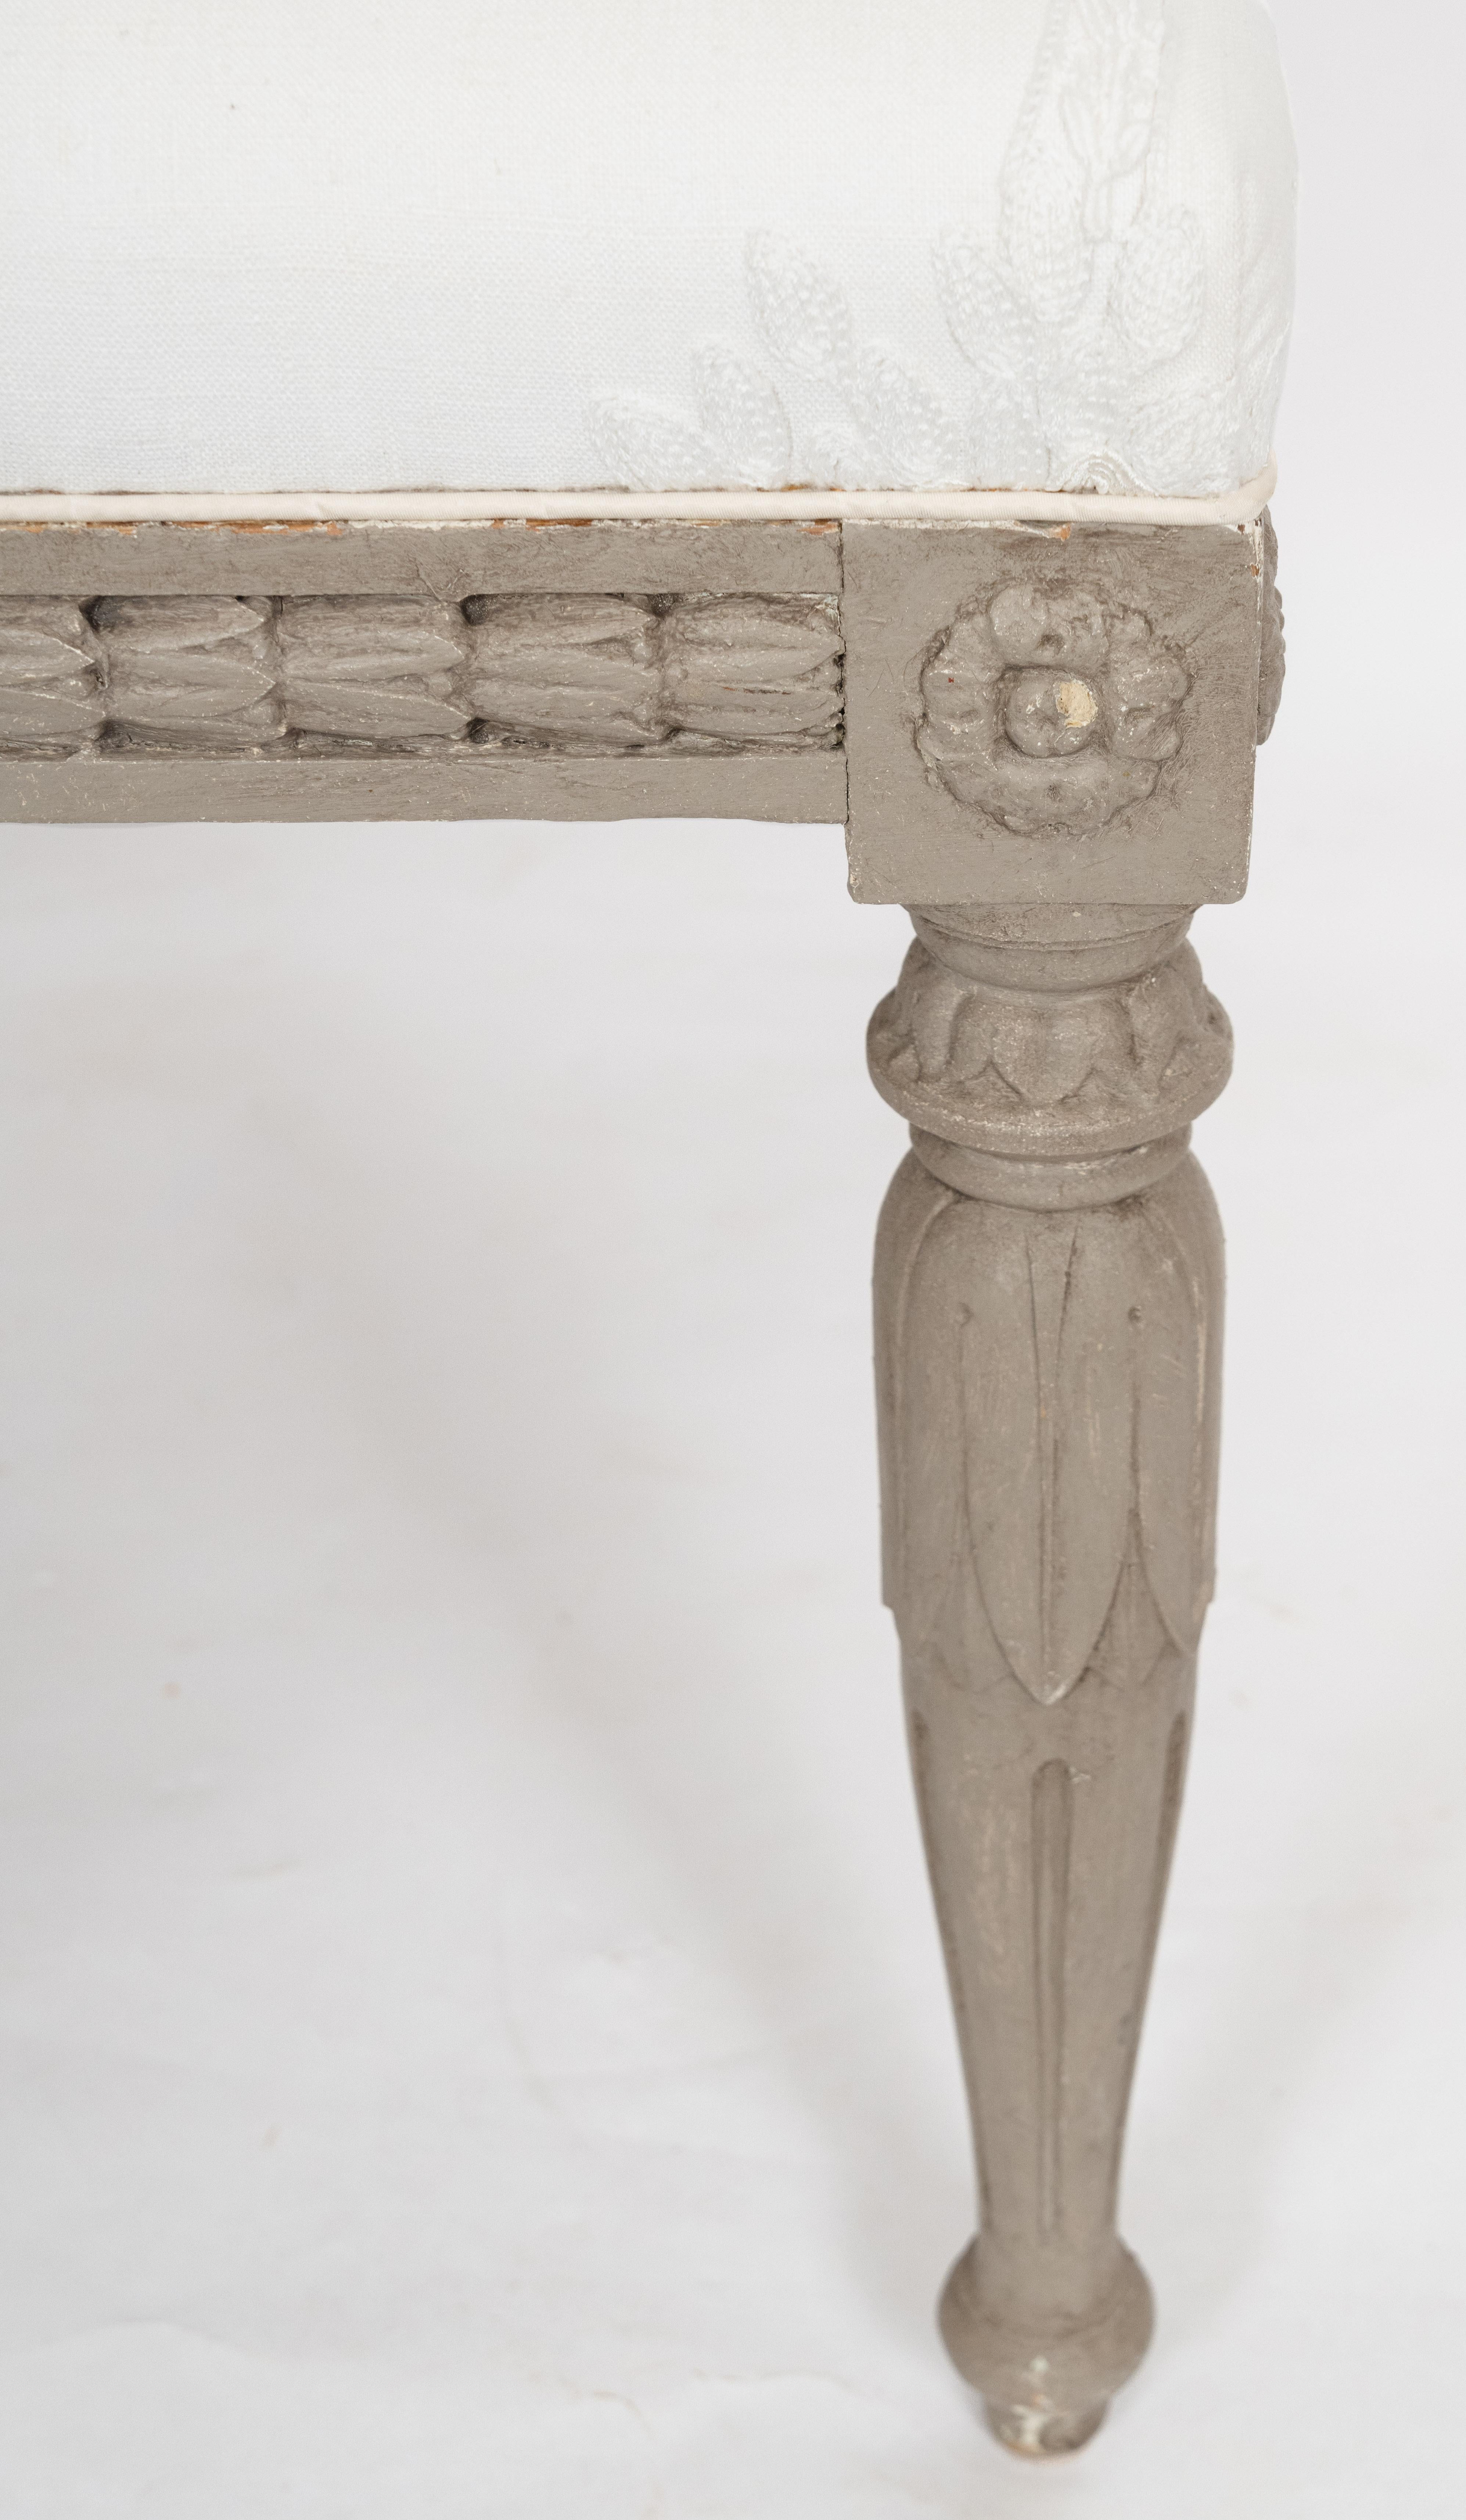 Gustavianischer Fußschemel aus dem 19. Jahrhundert mit kunstvollen Schnitzereien entlang des Holzsockels. Die Umrahmung mit eingesetztem Glockenblumenfries wird von vier konisch zulaufenden Beinen in Form von palmettenförmigen, kannelierten Säulen